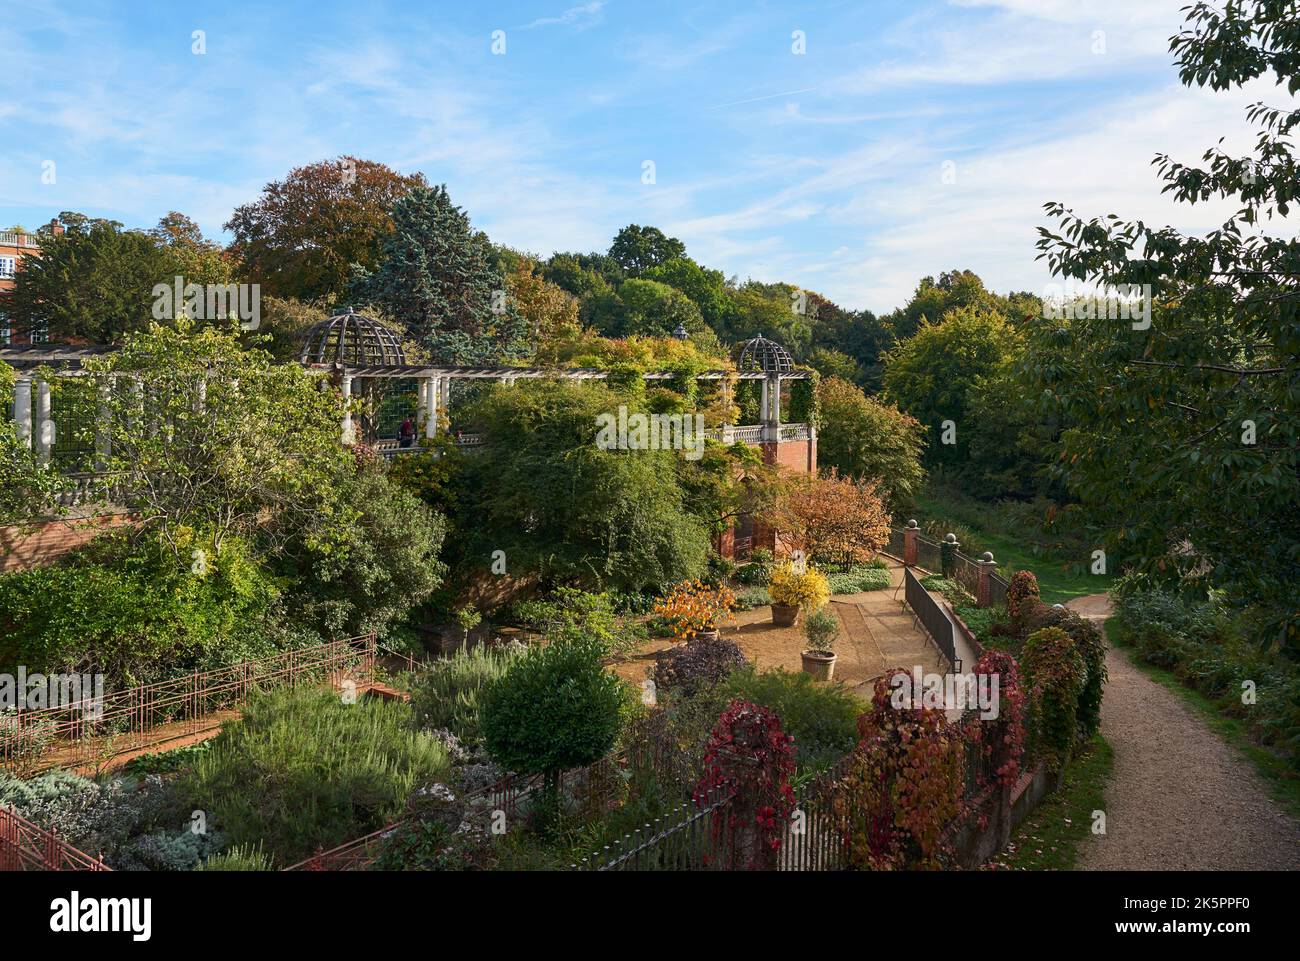 The Hill Gardens, à l'ouest de Hampstead Heath, en automne, dans le nord de Londres, dans le sud-est de l'Angleterre Banque D'Images